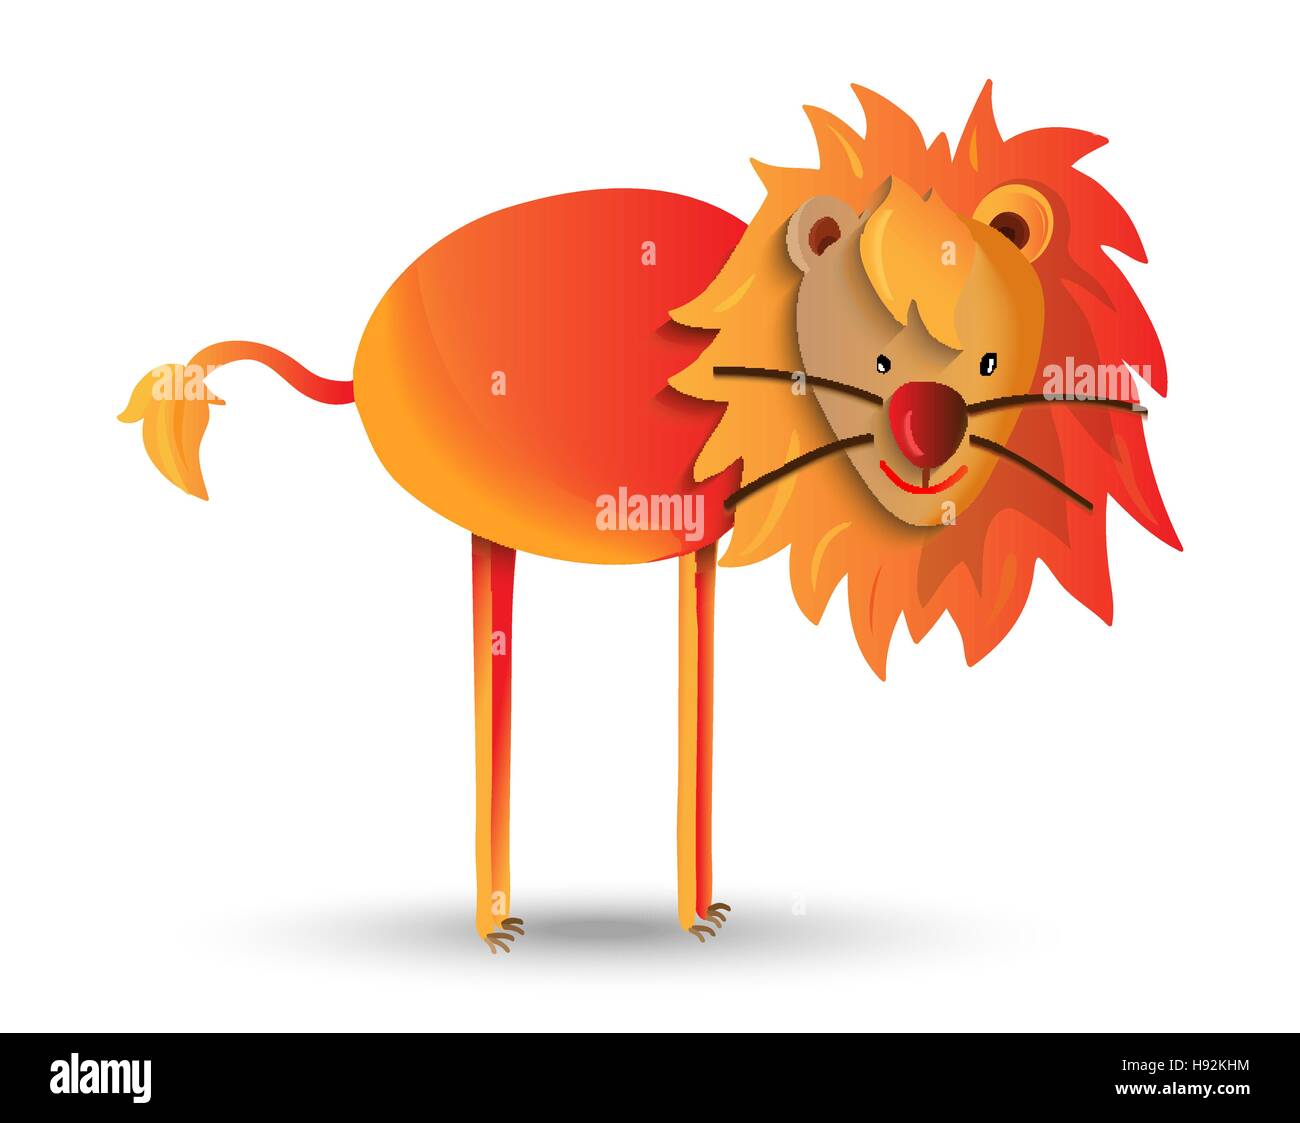 Carino wild animal cartoon illustrazione, happy jungle lion con la criniera. Ideale per i bambini o i progetti di istruzione. EPS10 vettore. Illustrazione Vettoriale